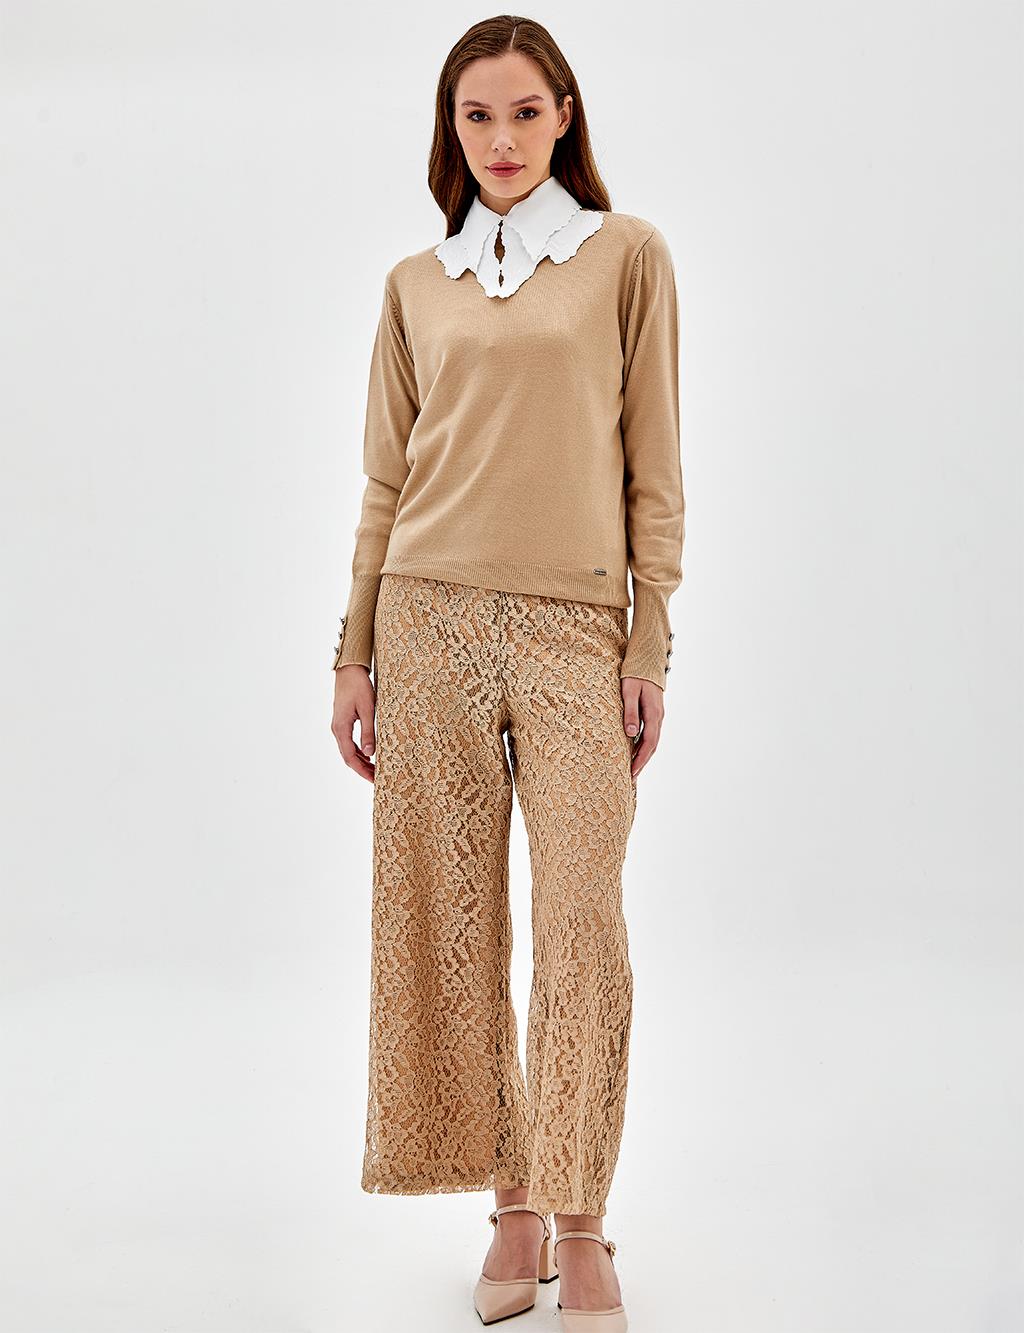 Кружевные многослойные брюки с высокой талией Песочно-бежевого цвета Kayra двойной костюм с вышивкой бисером песочно бежевого цвета kayra